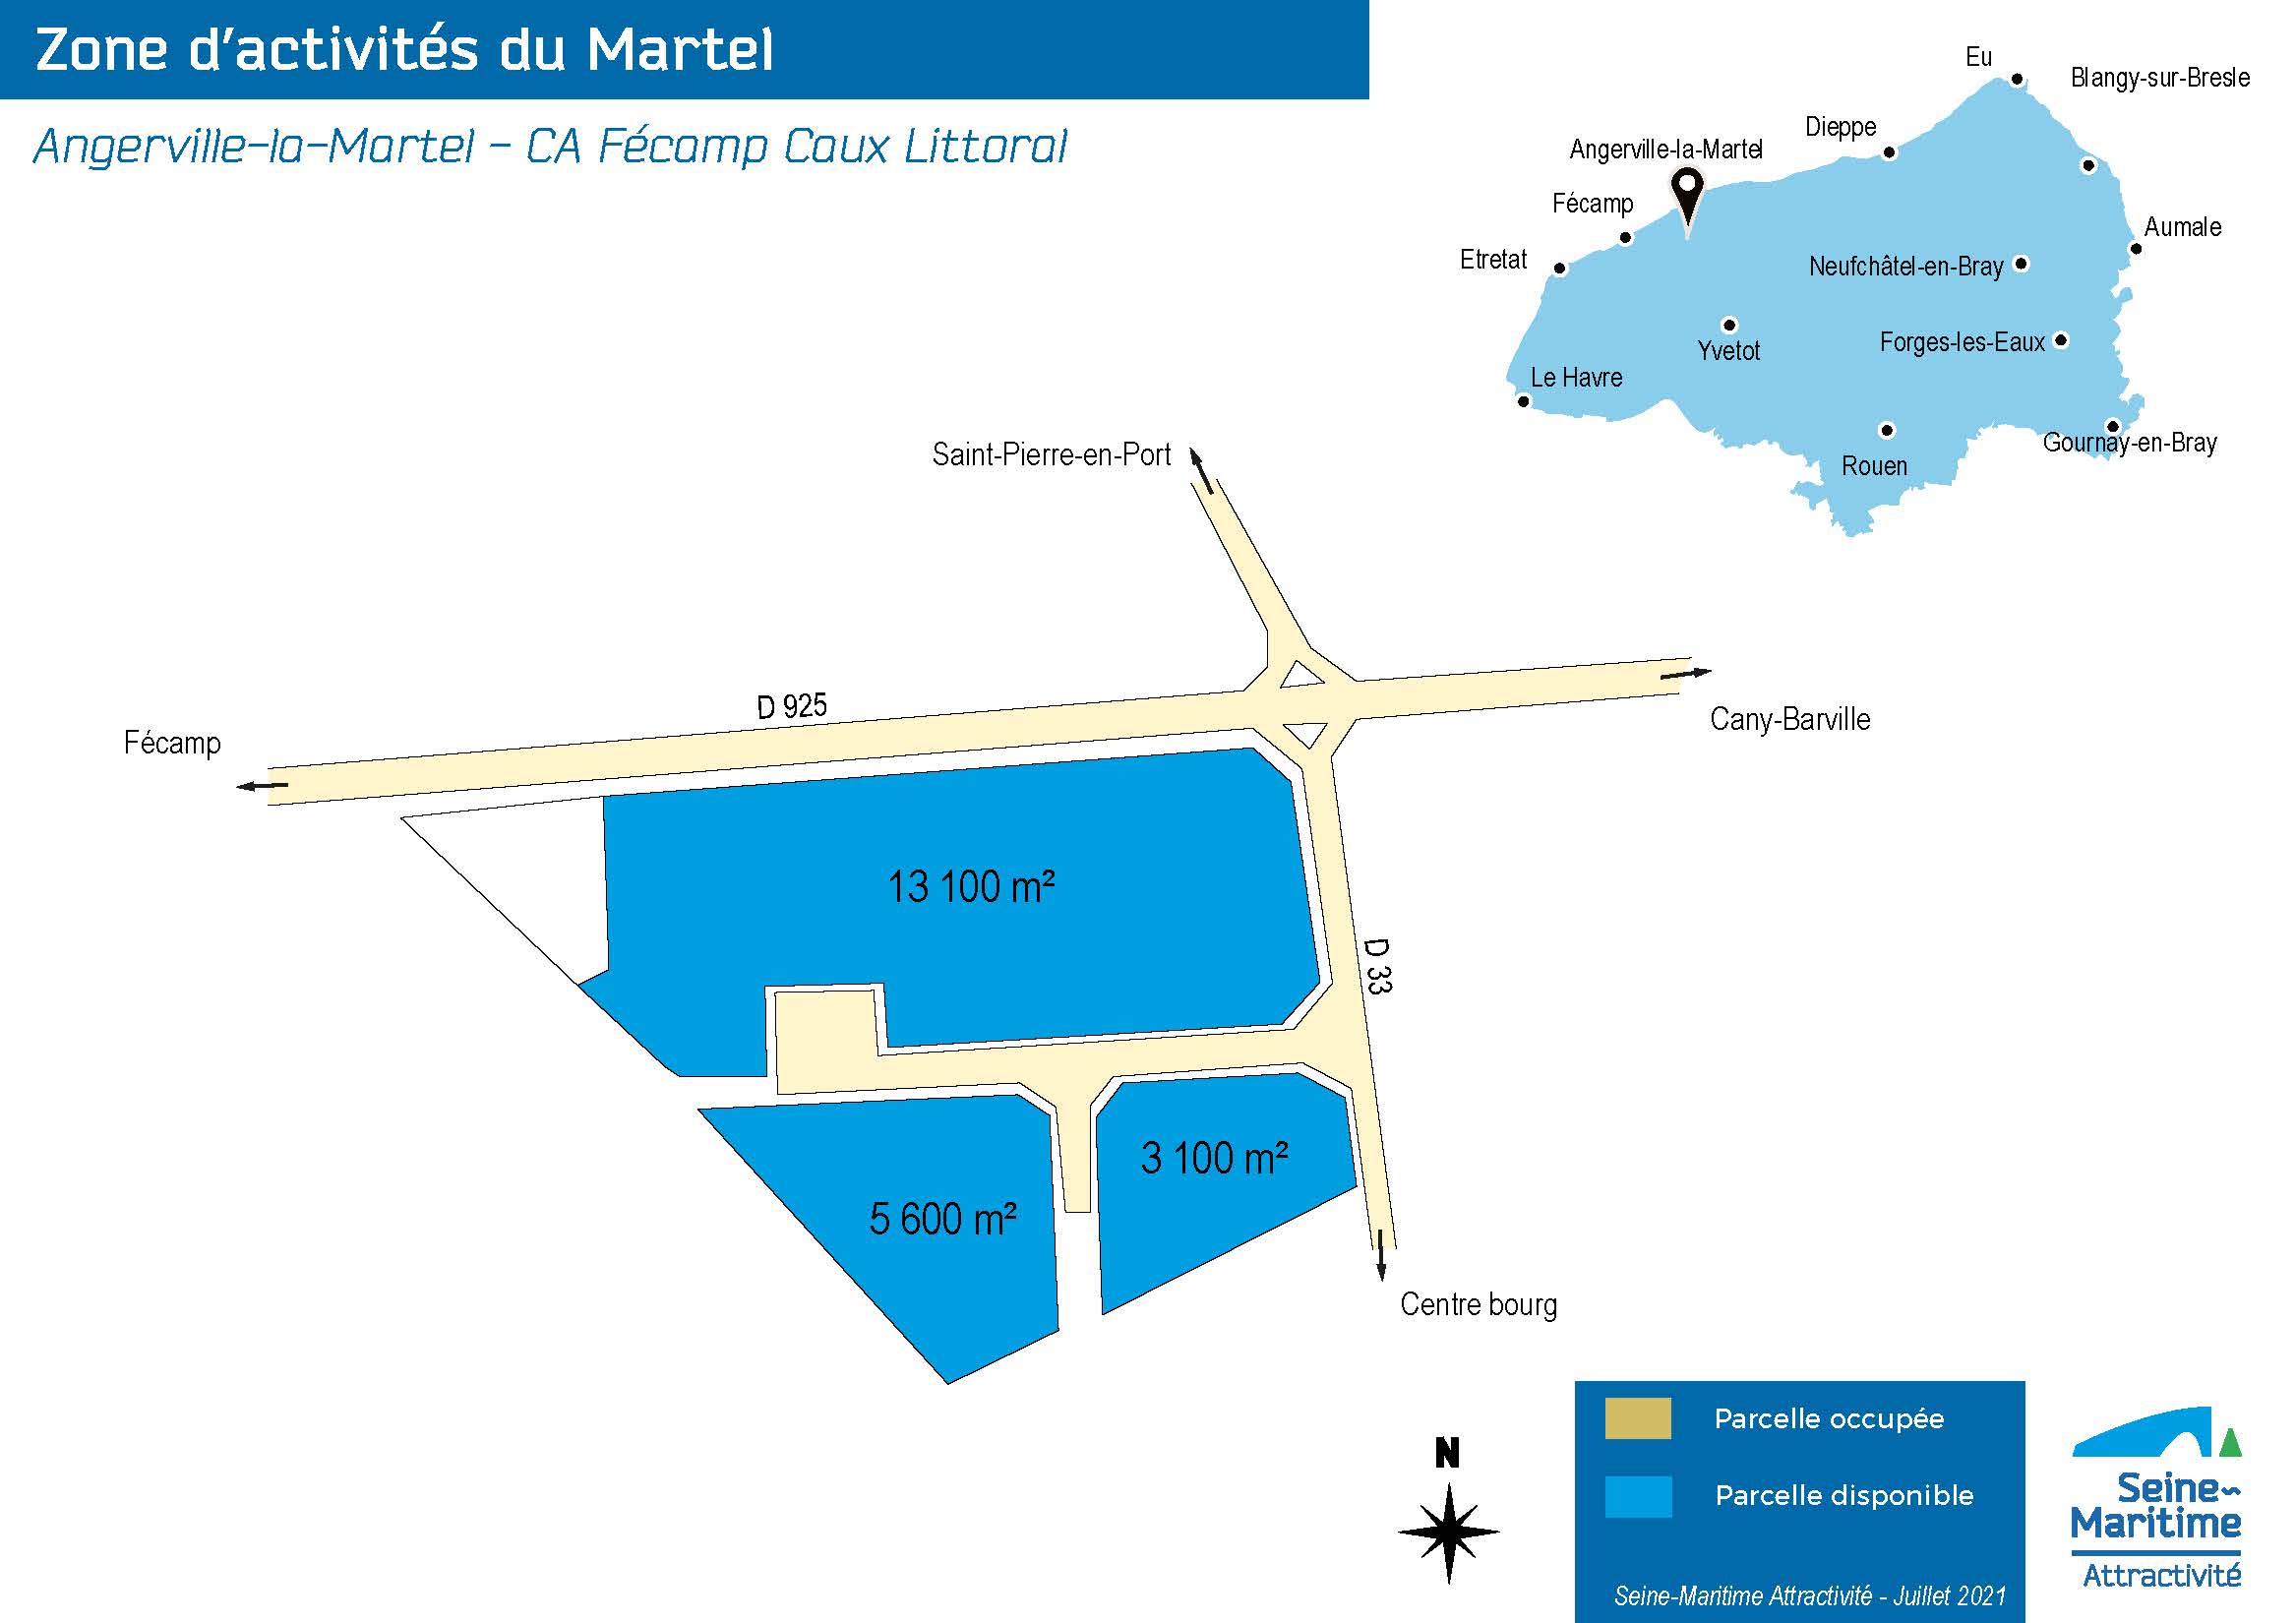 ZA du Martel - Angerville-la-Martel - Juillet 2021, ©SMA2021